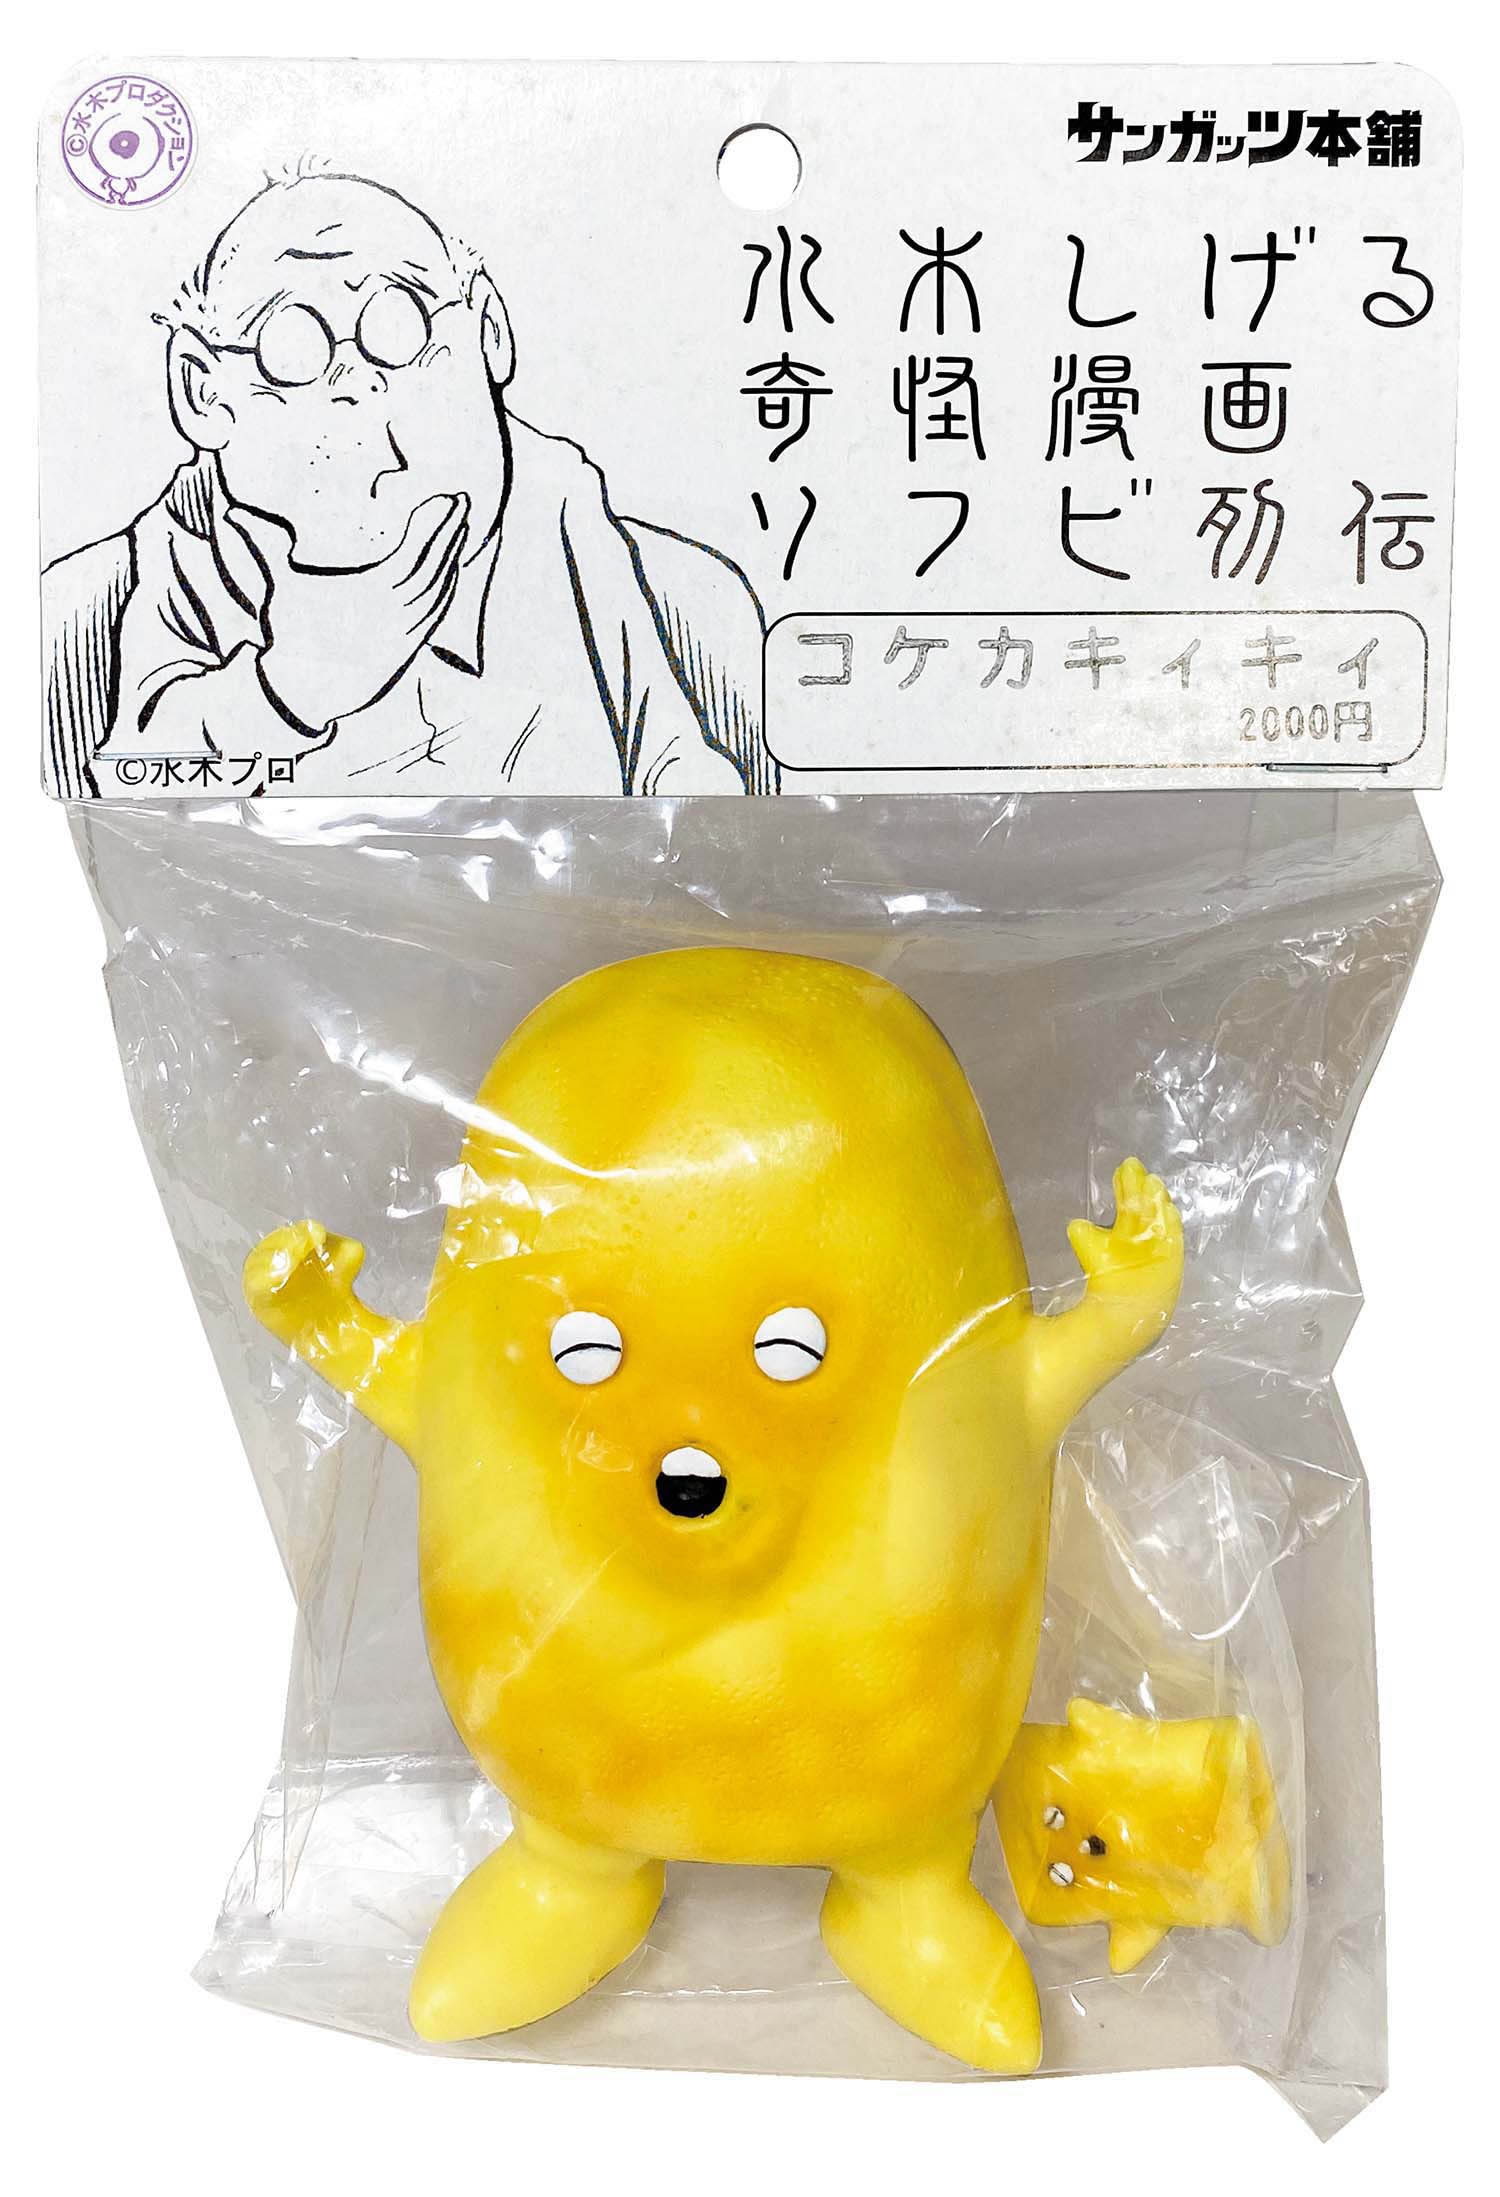 サンガッツ本舗 コケカキィキィ 黄成型/ミニコケカキィキィ付